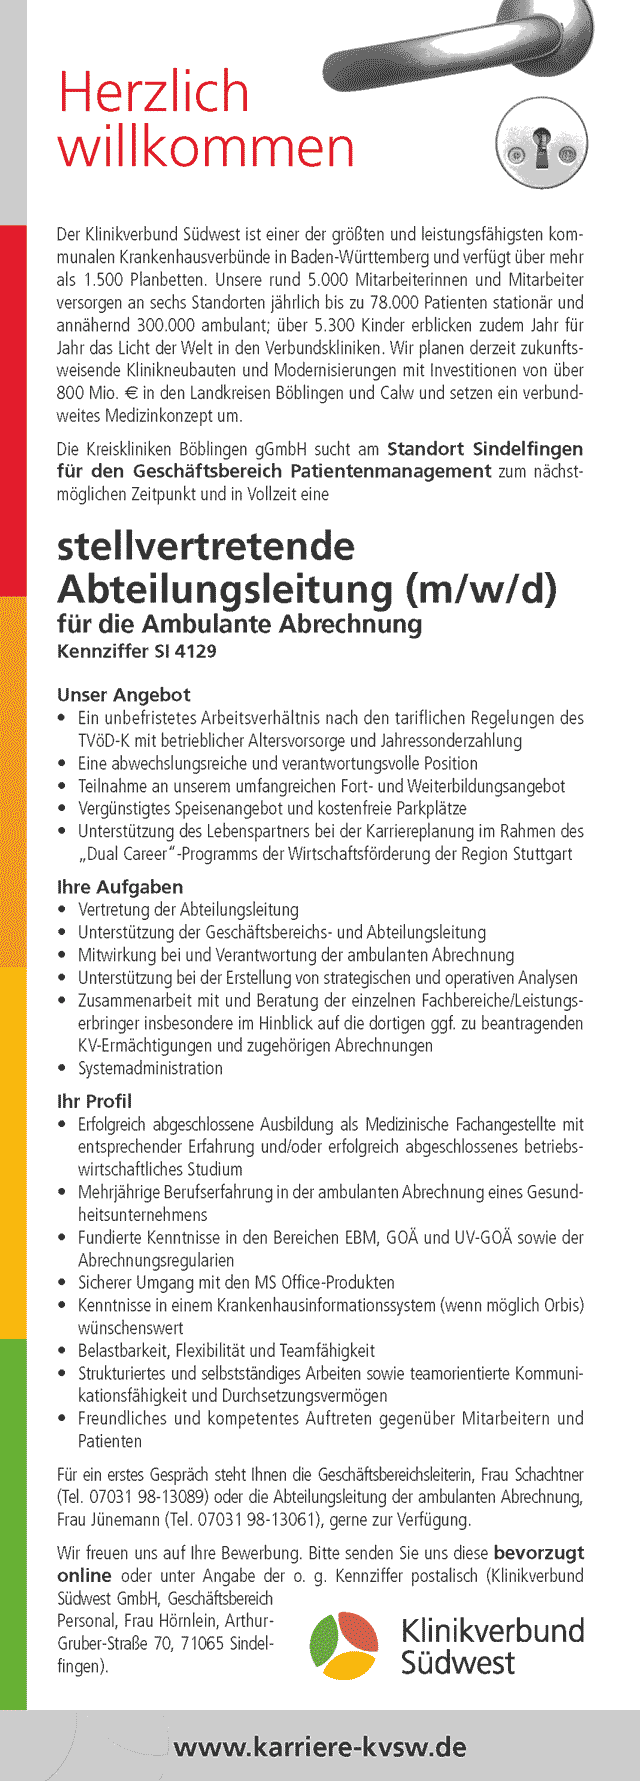 Klinikverbund Südwest GmbH: Stellvertretende Abteilungsleitung für die ambulante Abrechnung (m/w/d)